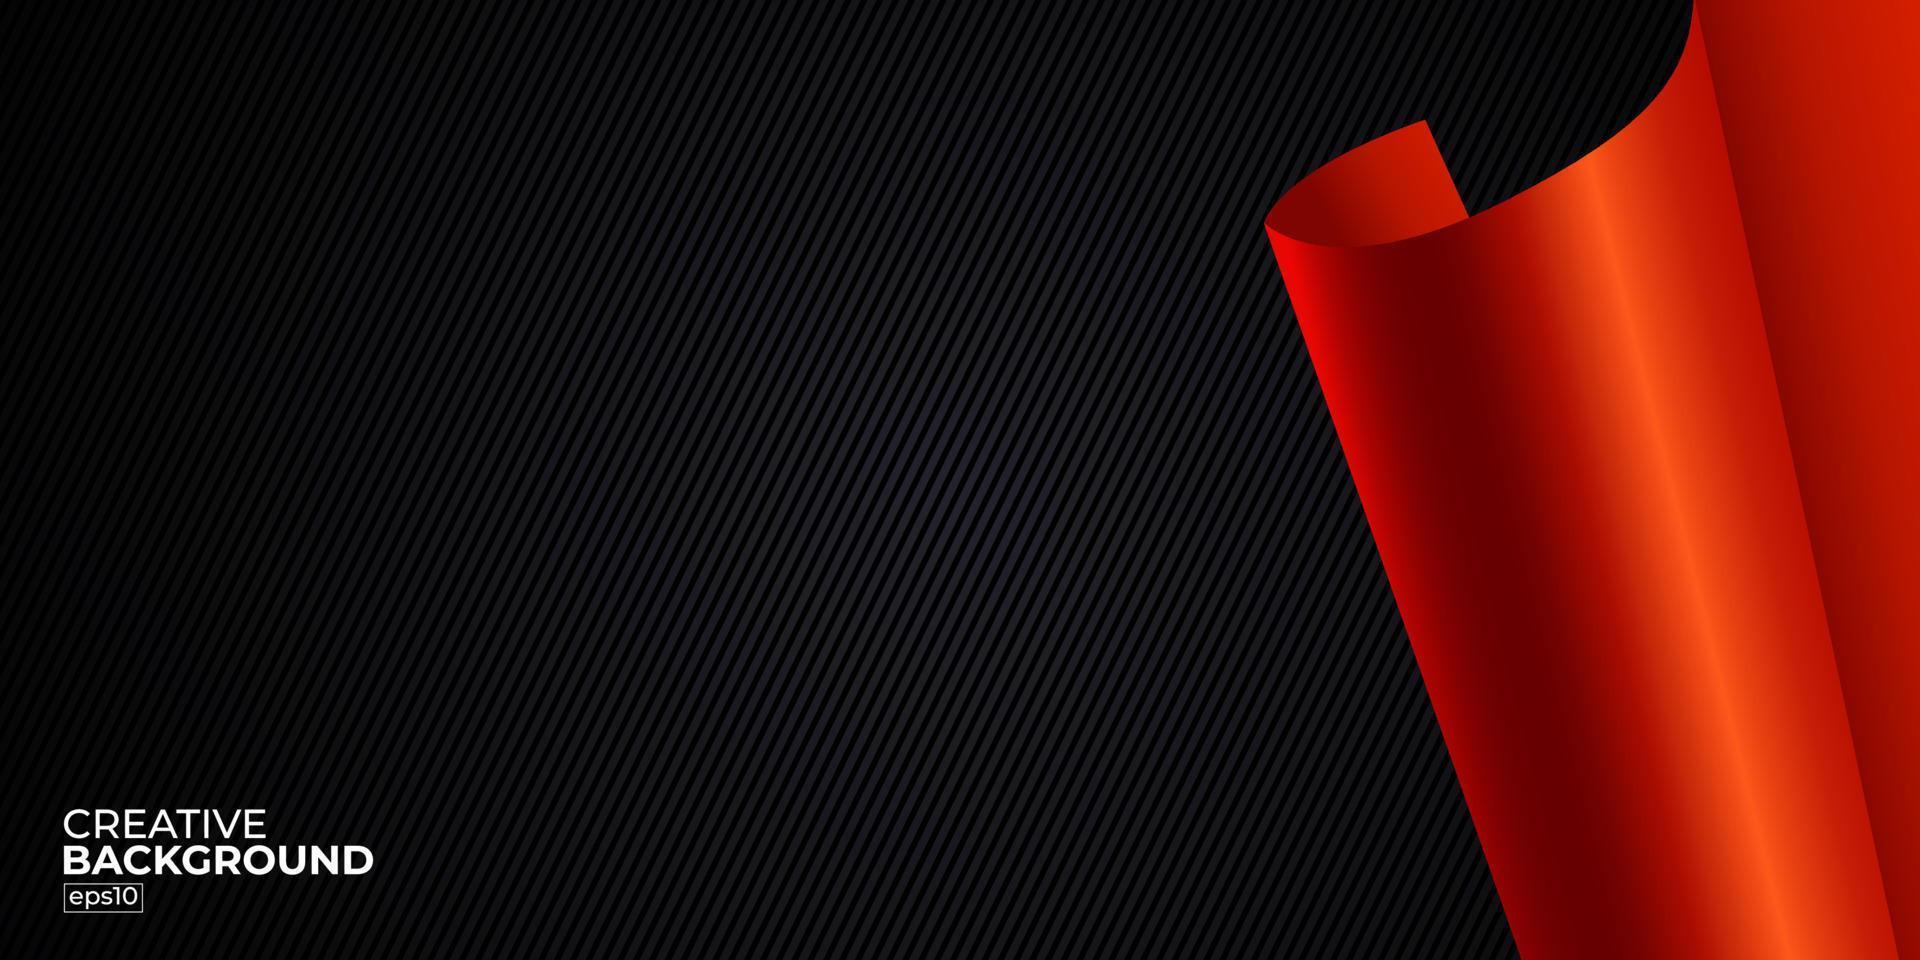 lusso astratto premium rosso e nero con il gradiente è l'illustrazione vettoriale di design di sfondo morbido con struttura in metallo da parete per sito Web, poster, brochure, modello di presentazione ecc.